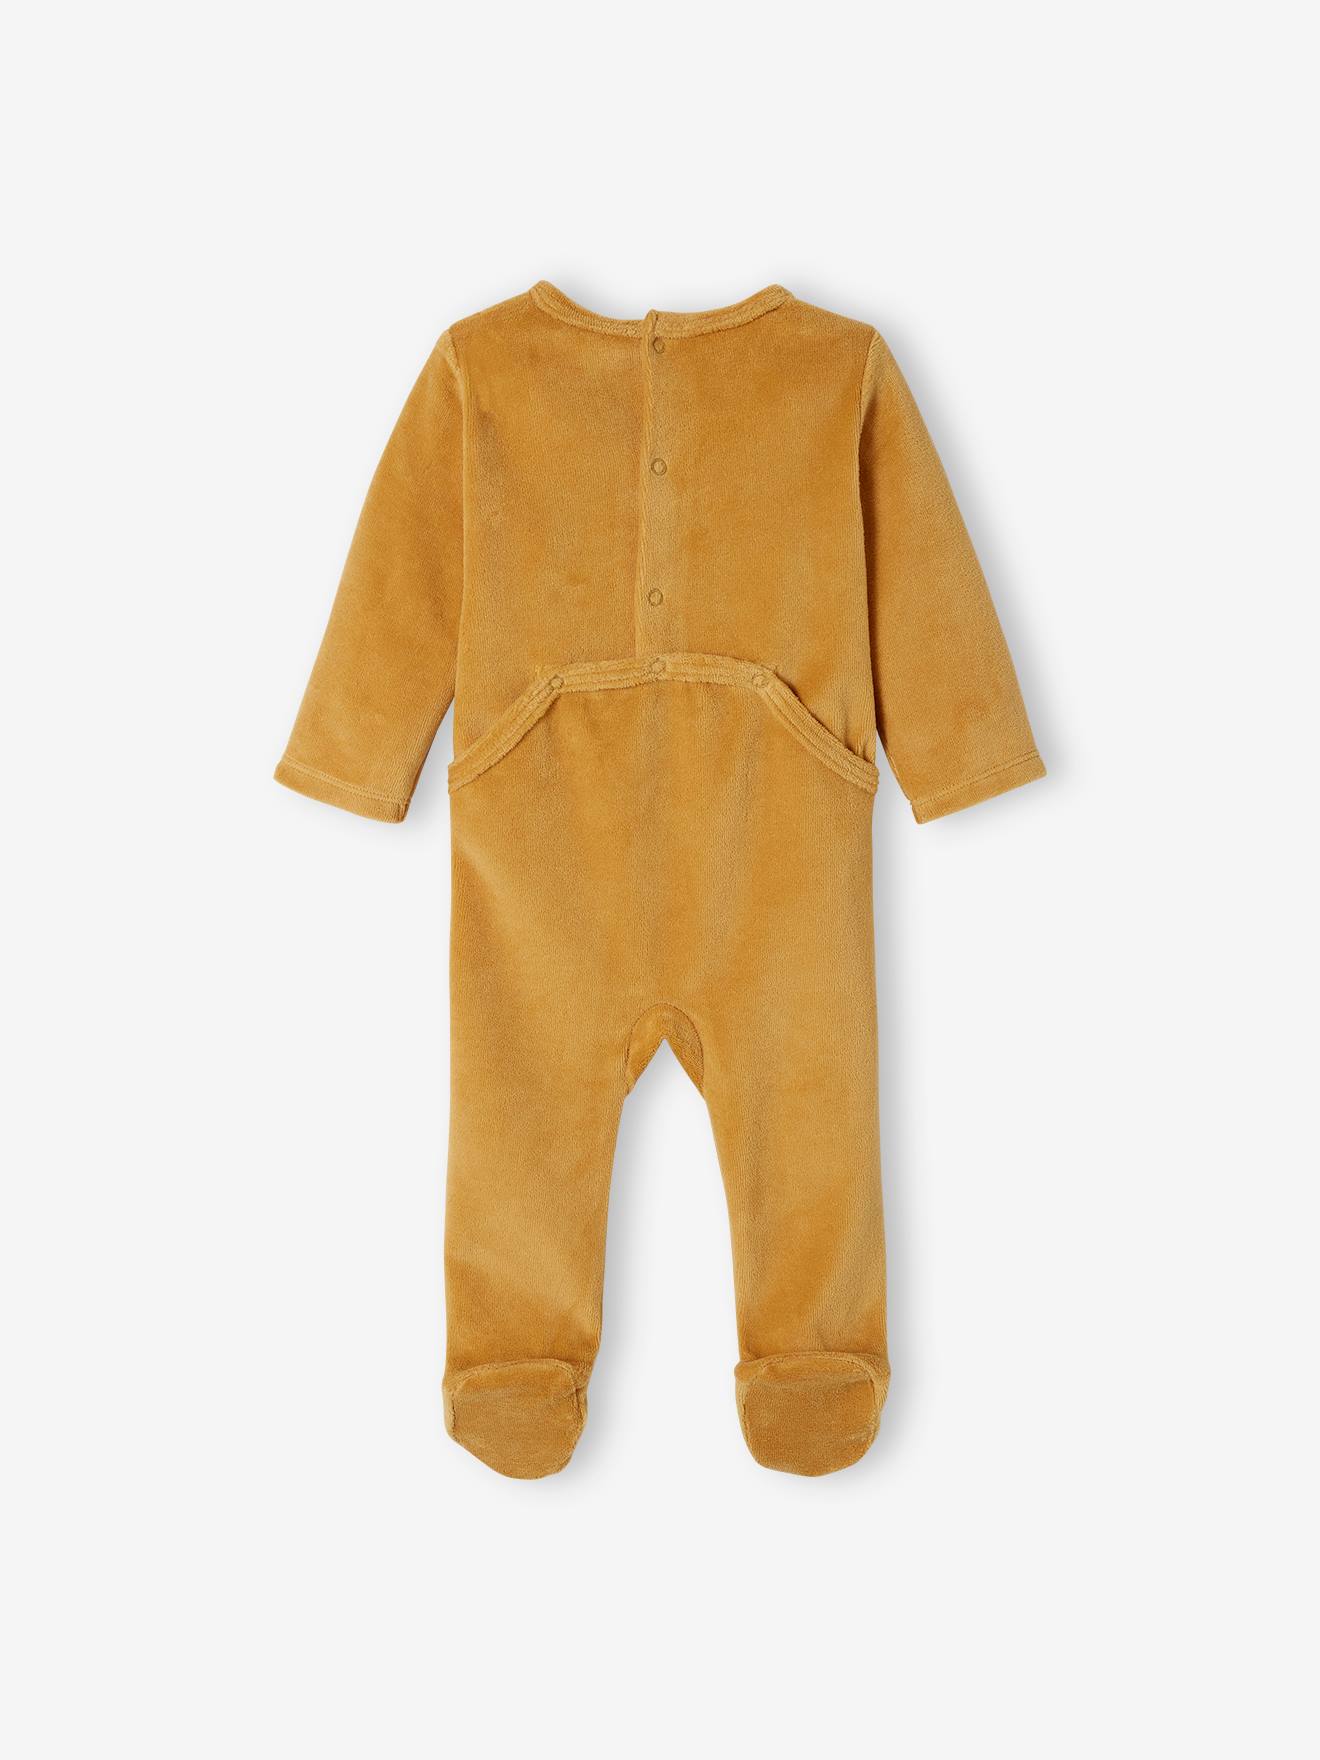 Pyjama velours jaune Winnie bébé garçon 12 MOIS DISNEY